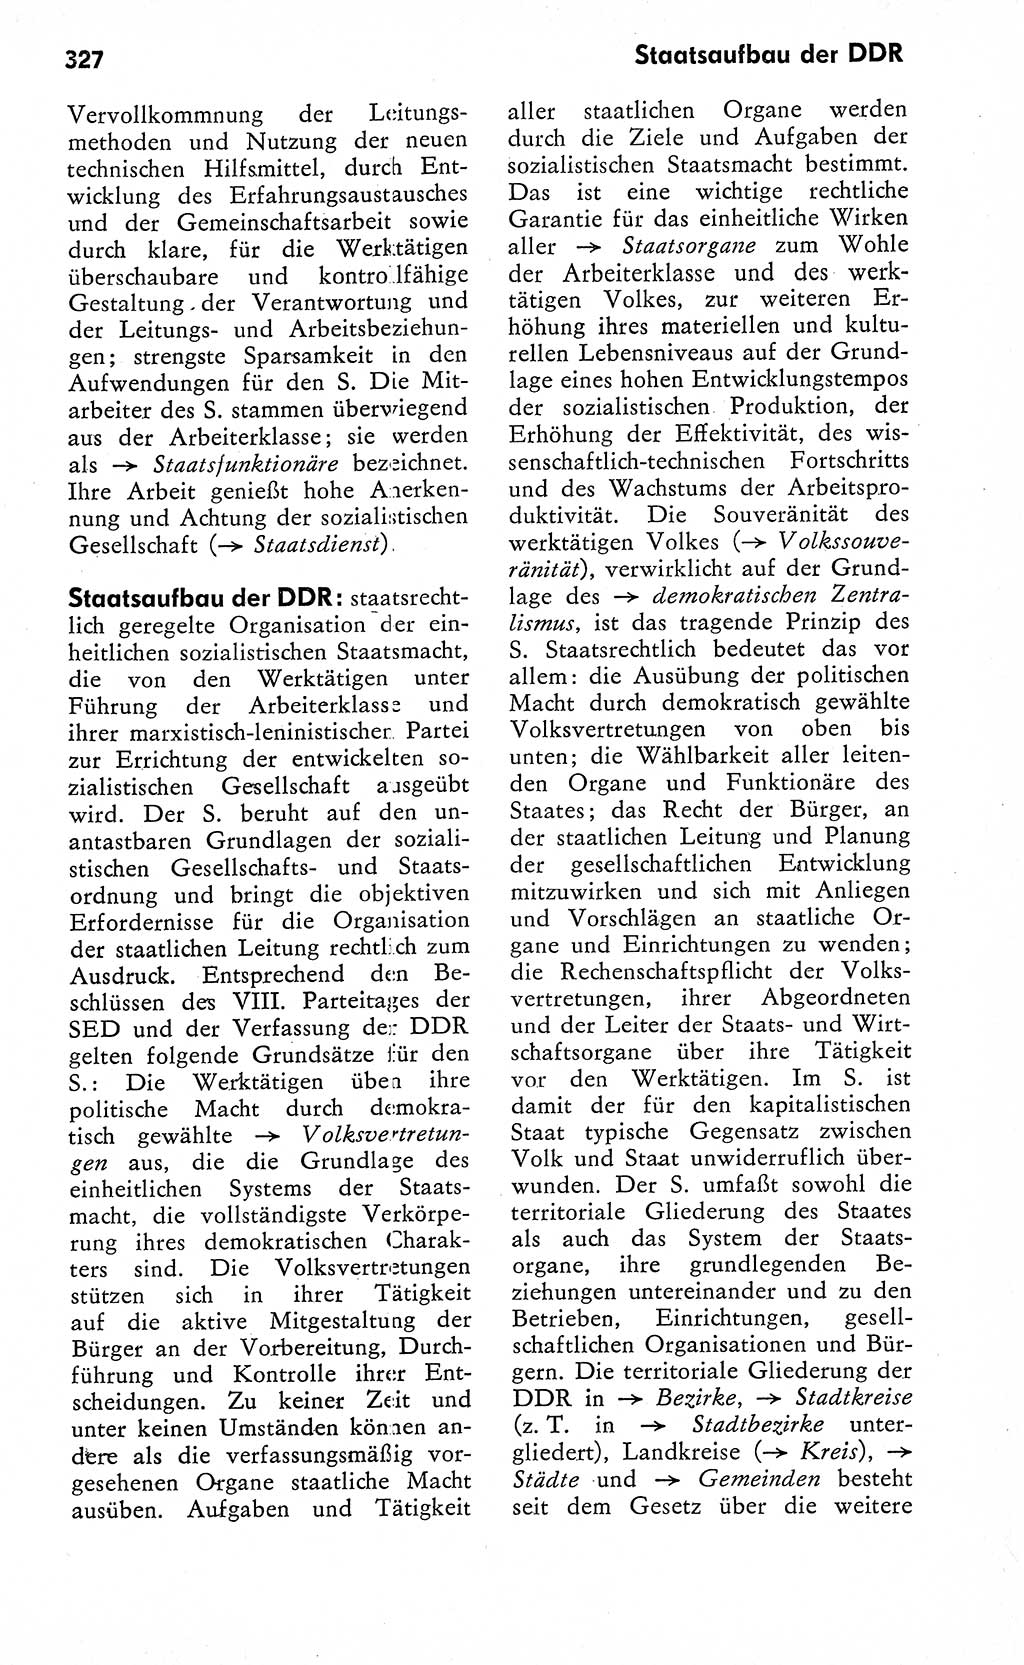 Wörterbuch zum sozialistischen Staat [Deutsche Demokratische Republik (DDR)] 1974, Seite 327 (Wb. soz. St. DDR 1974, S. 327)